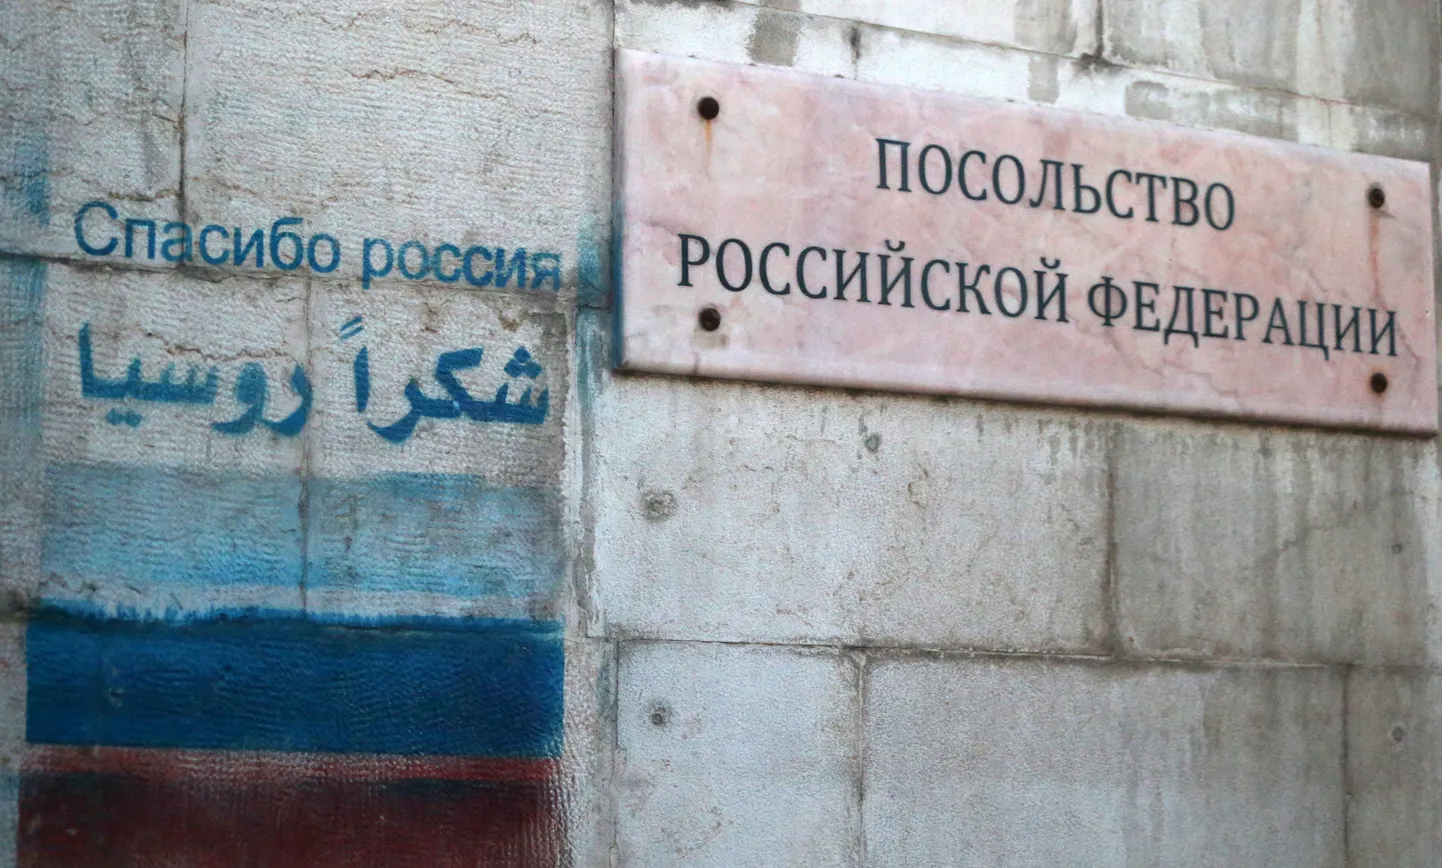 Venemaa saatkond Damaskuses.